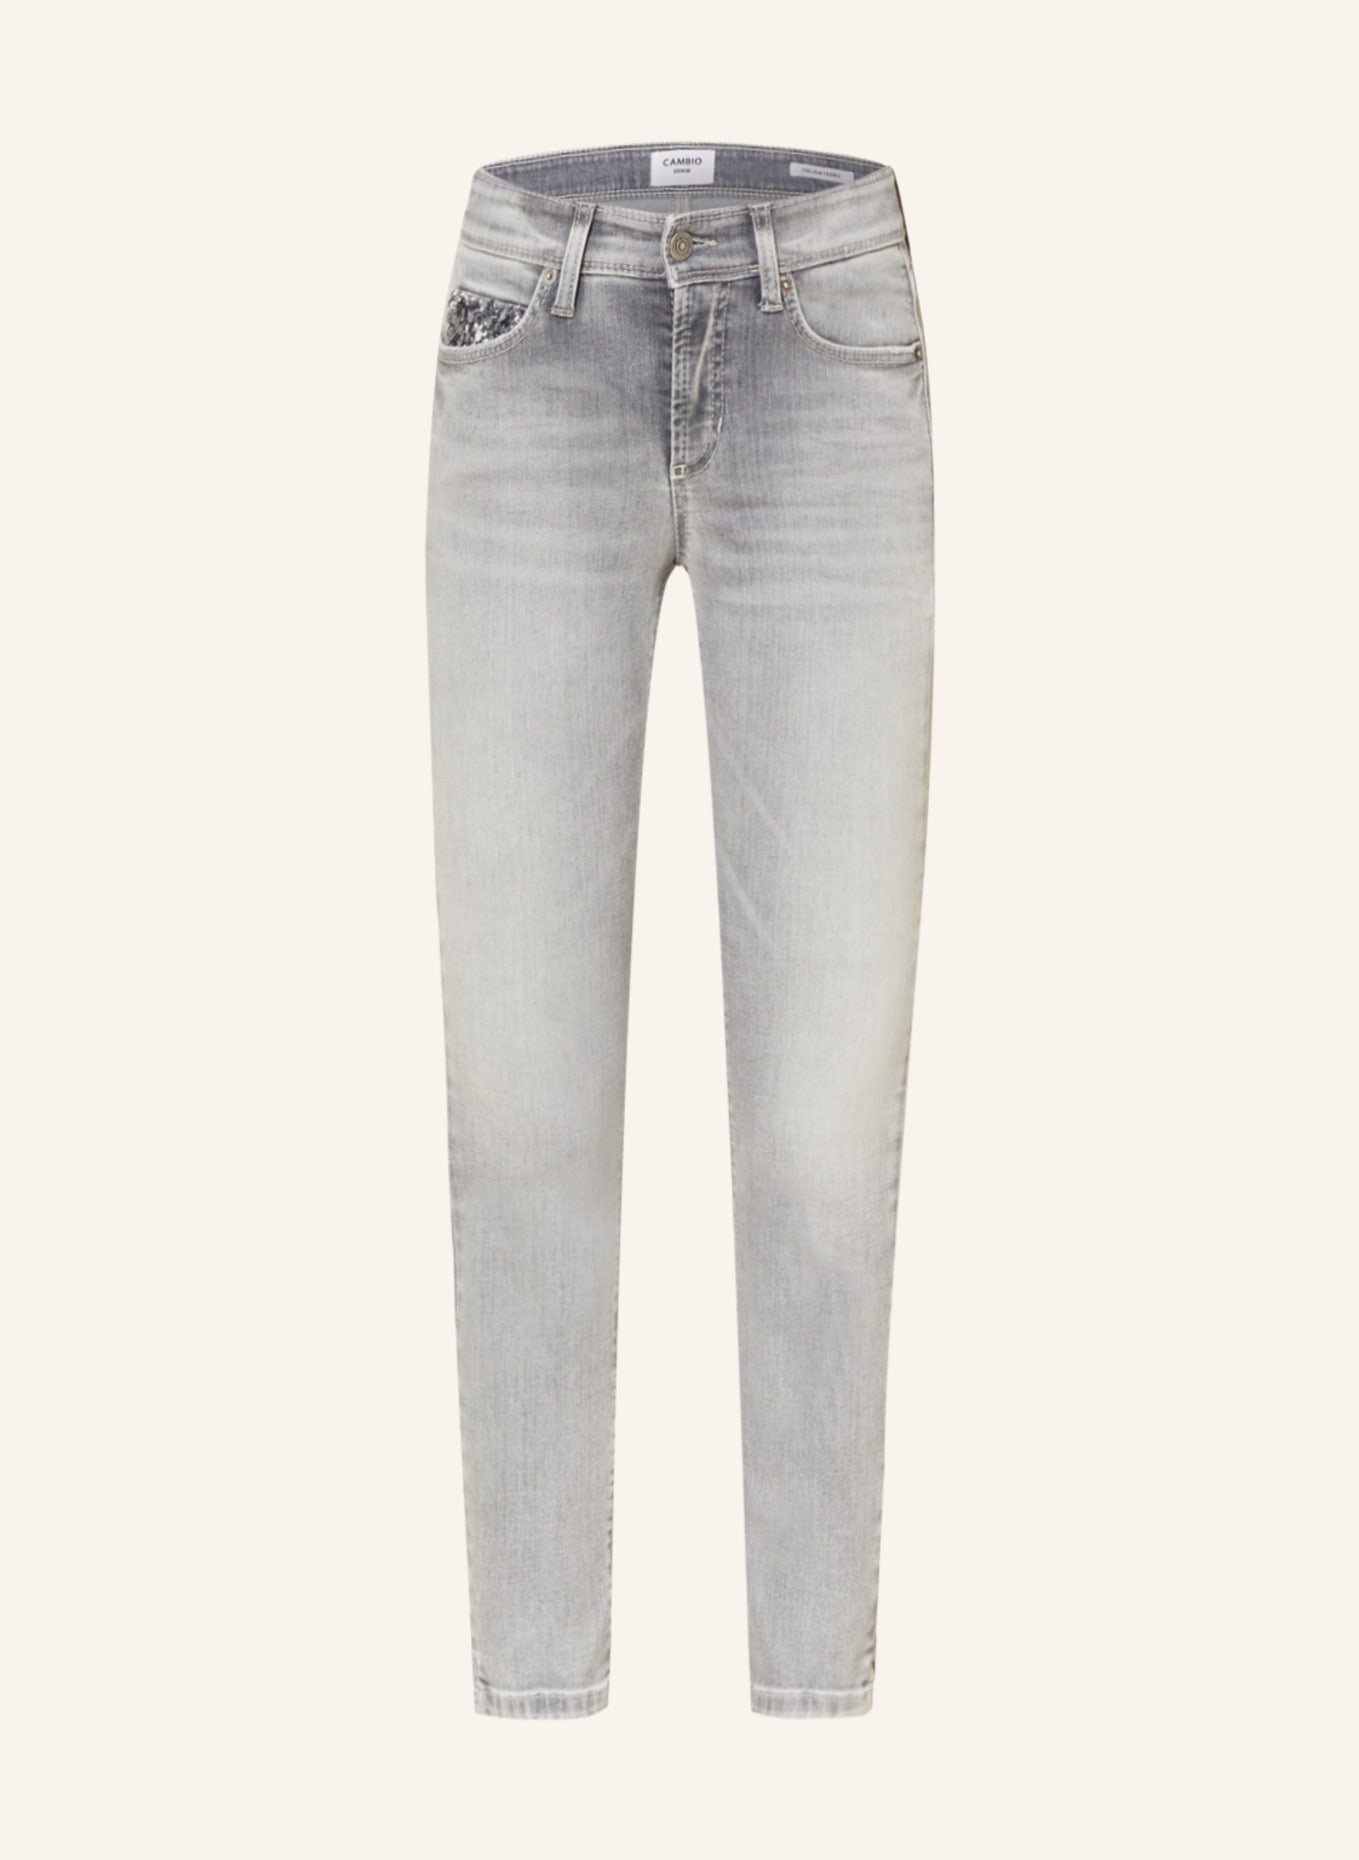 CAMBIO 7/8-Jeans PIPER mit Pailletten, Farbe: 5282 contrast bleached (Bild 1)